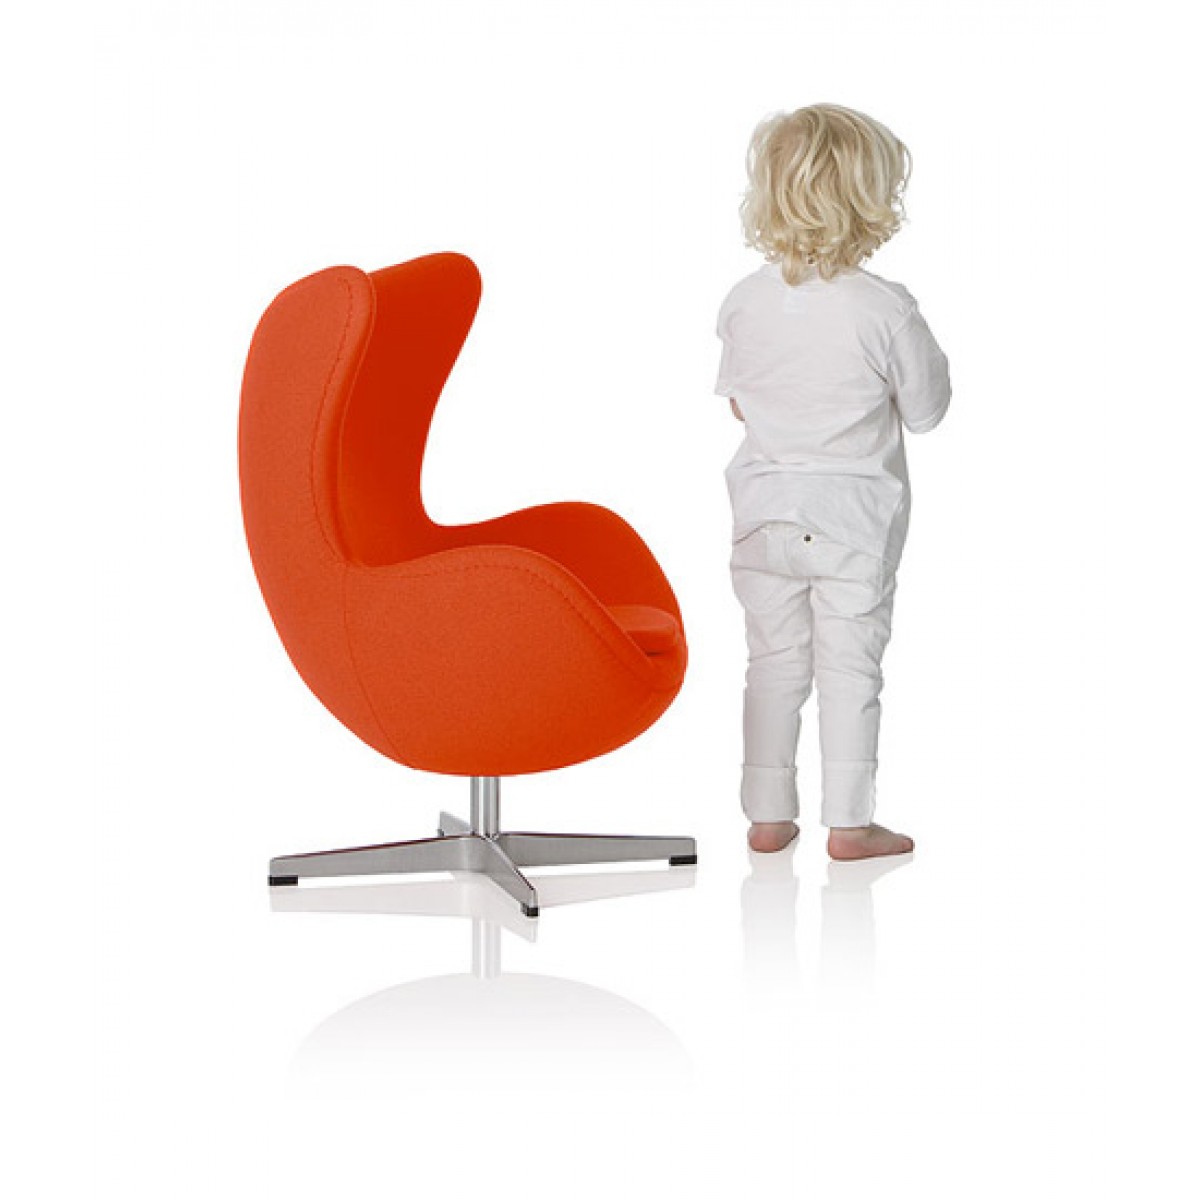 Детское кресло стул. Кресло яйцо напольное икеа. Ребенок в кресле. Стул в детскую комнату. Стул для детской комнаты.